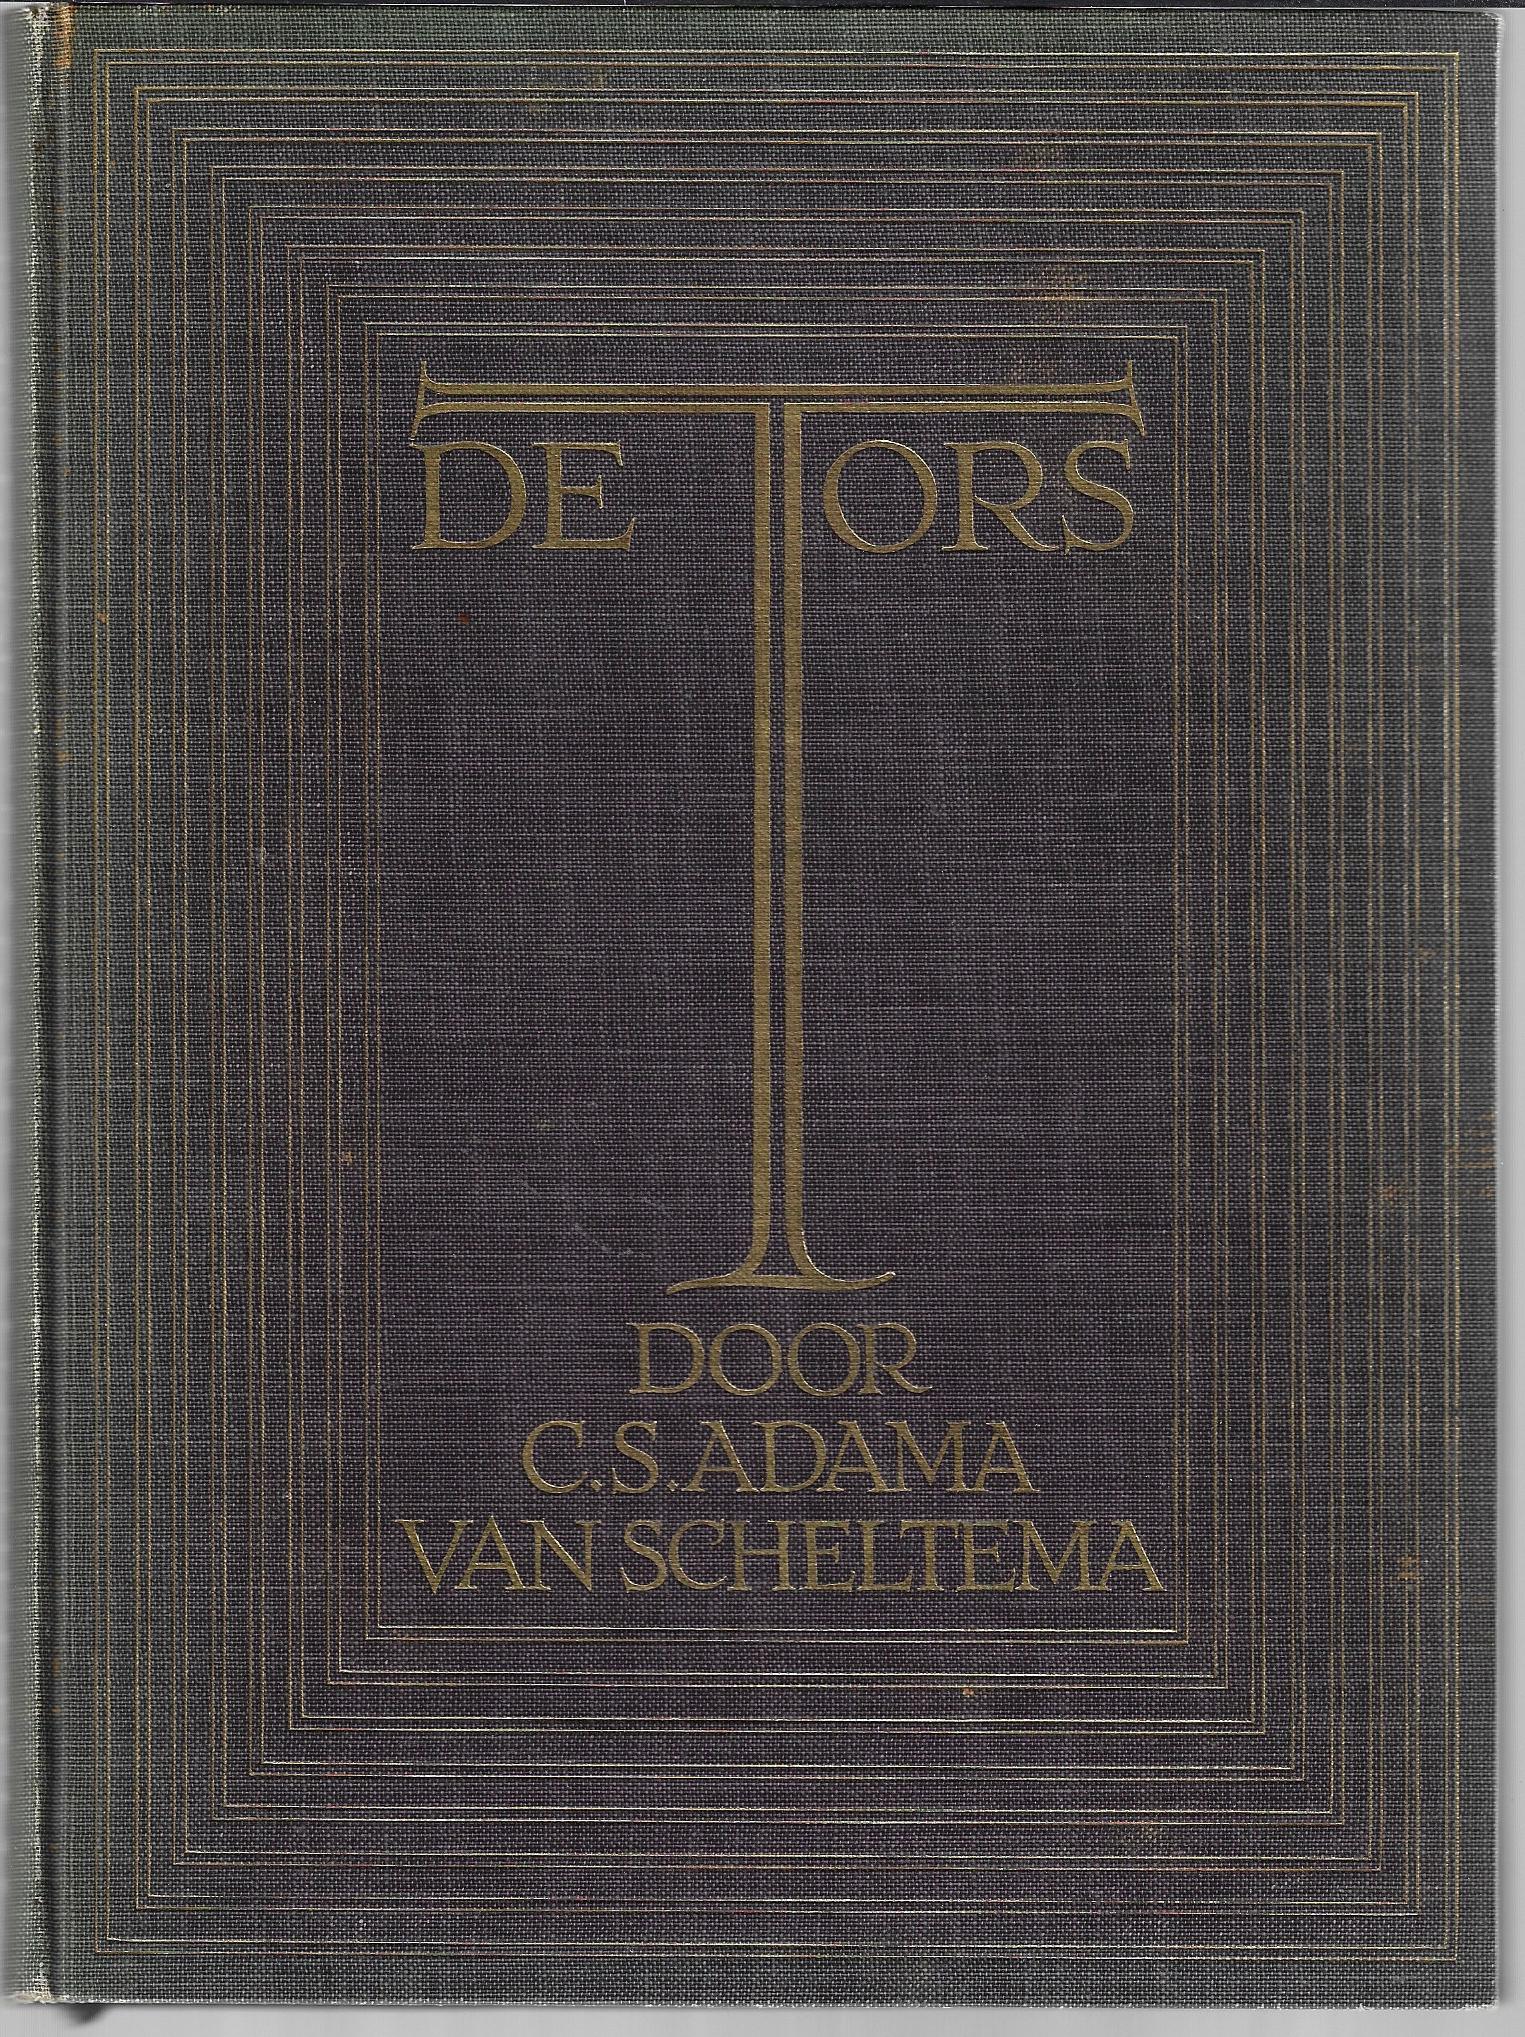 Adama van Scheltema, C.S. - De Tors